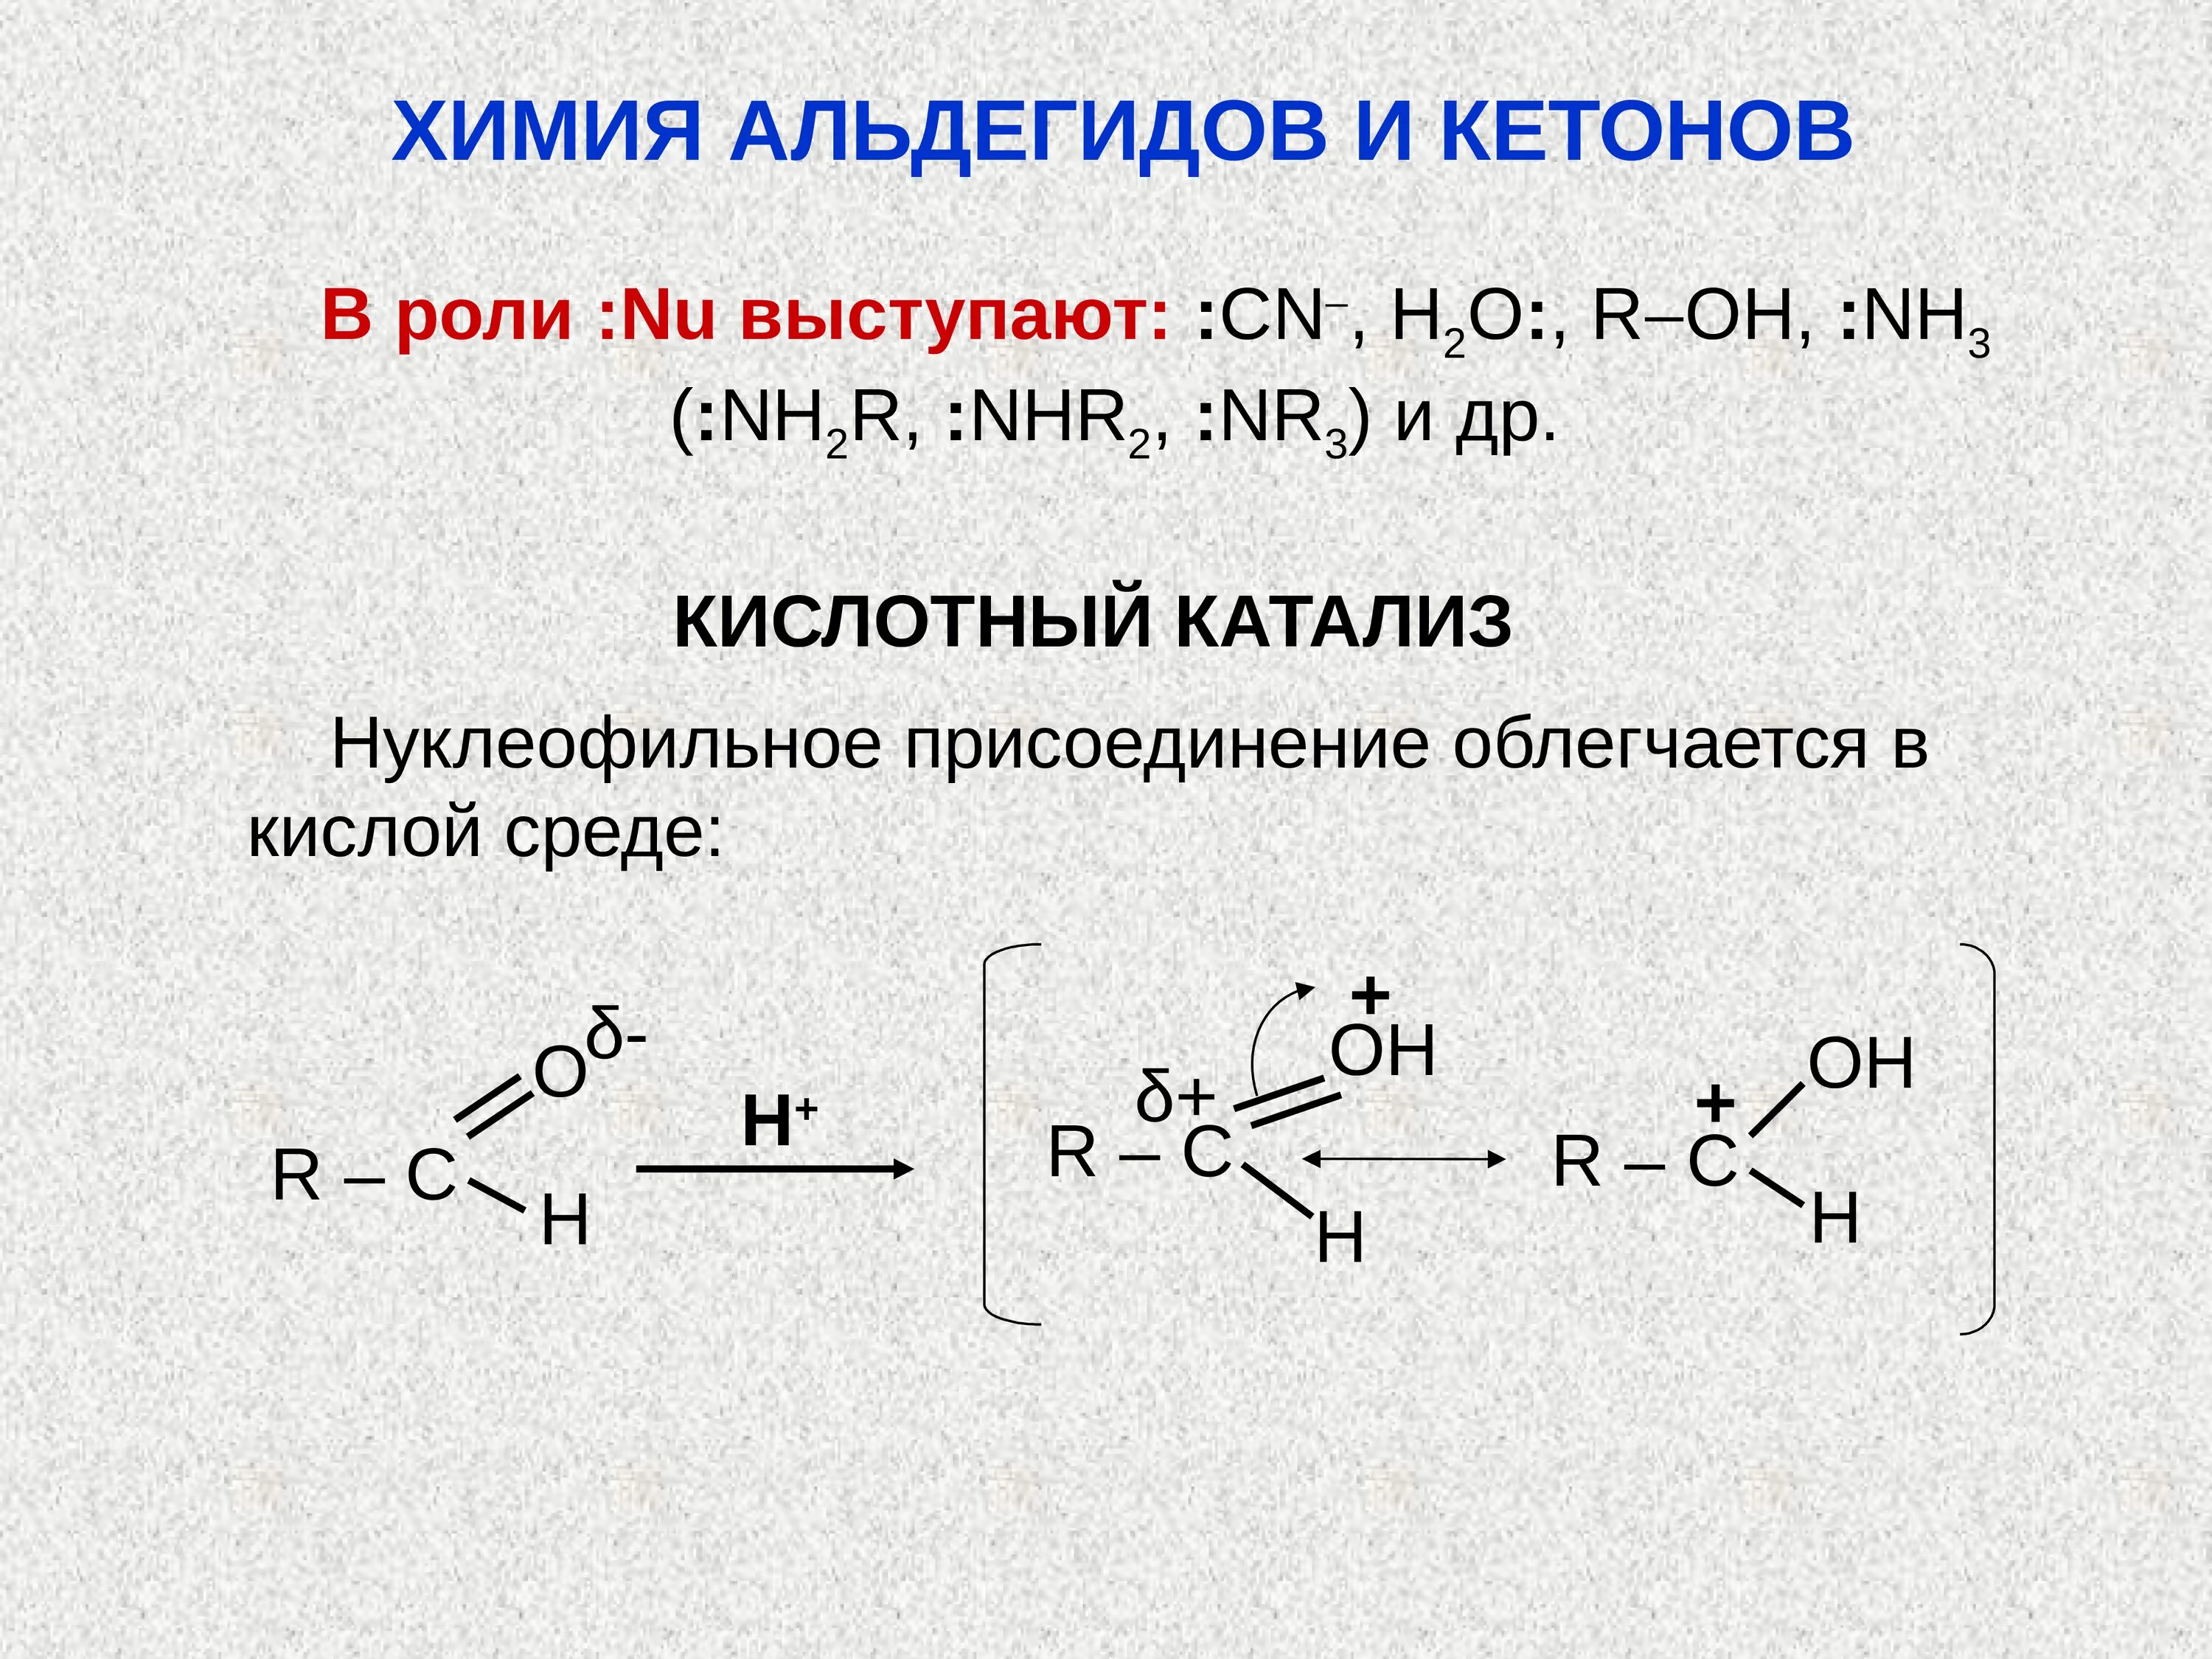 Щелочной катализ альдегида. Кислотный катализ альдегидов. Основный катализ альдегидов и кетонов. Роль кислотного катализа альдегидов и кетонов. Реакция с водой в кислой среде